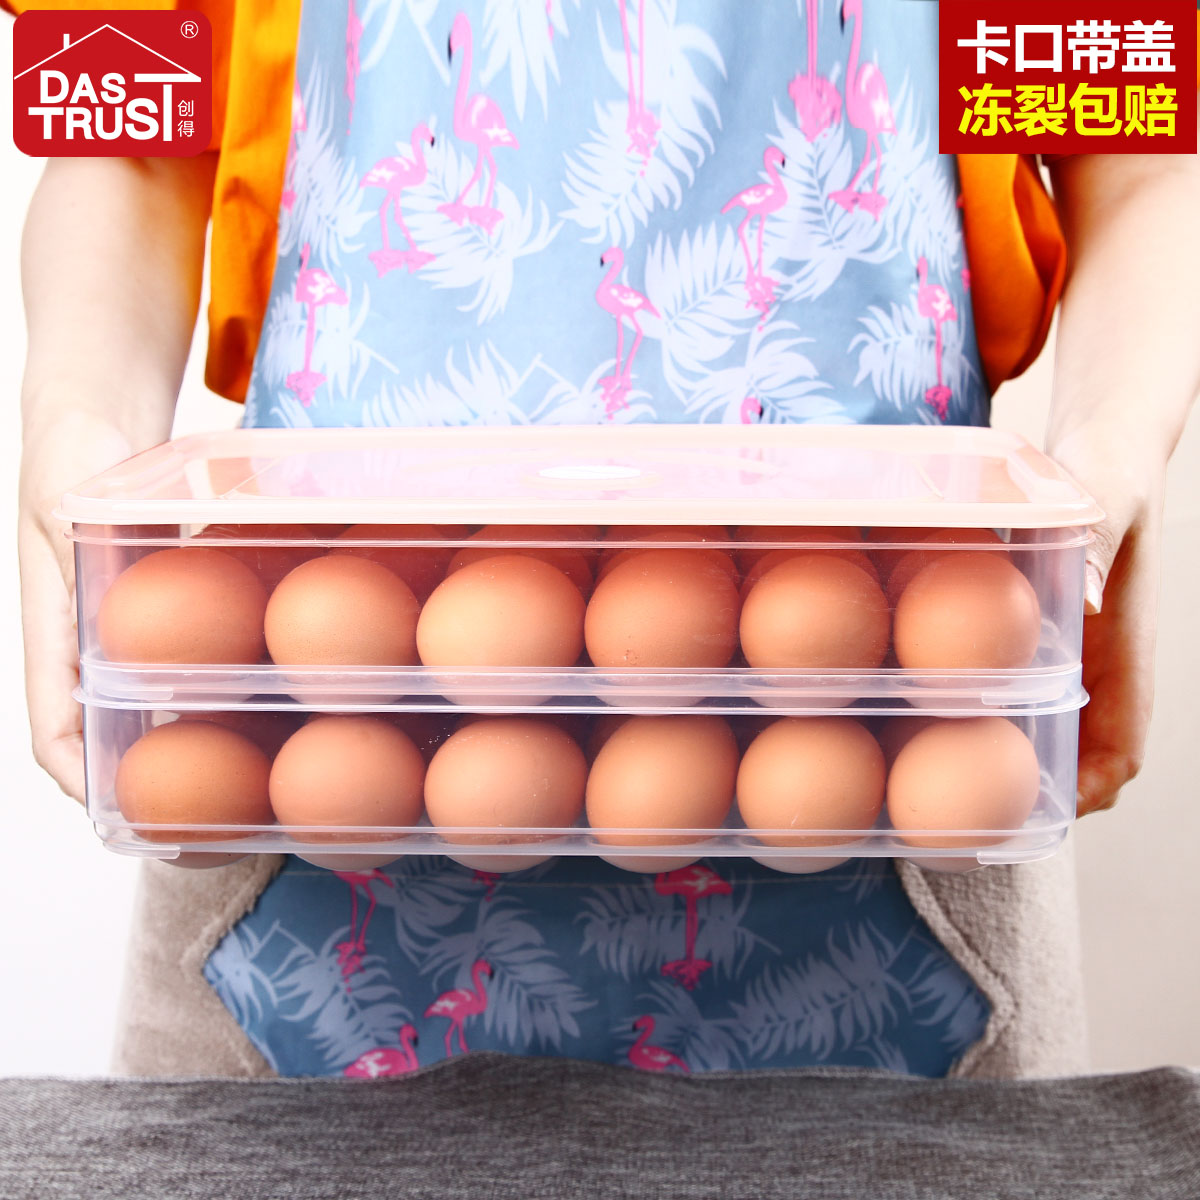 创得冰箱鸡蛋盒放鸡蛋的保鲜收纳盒家用装蛋塑料架托24格蛋托蛋架